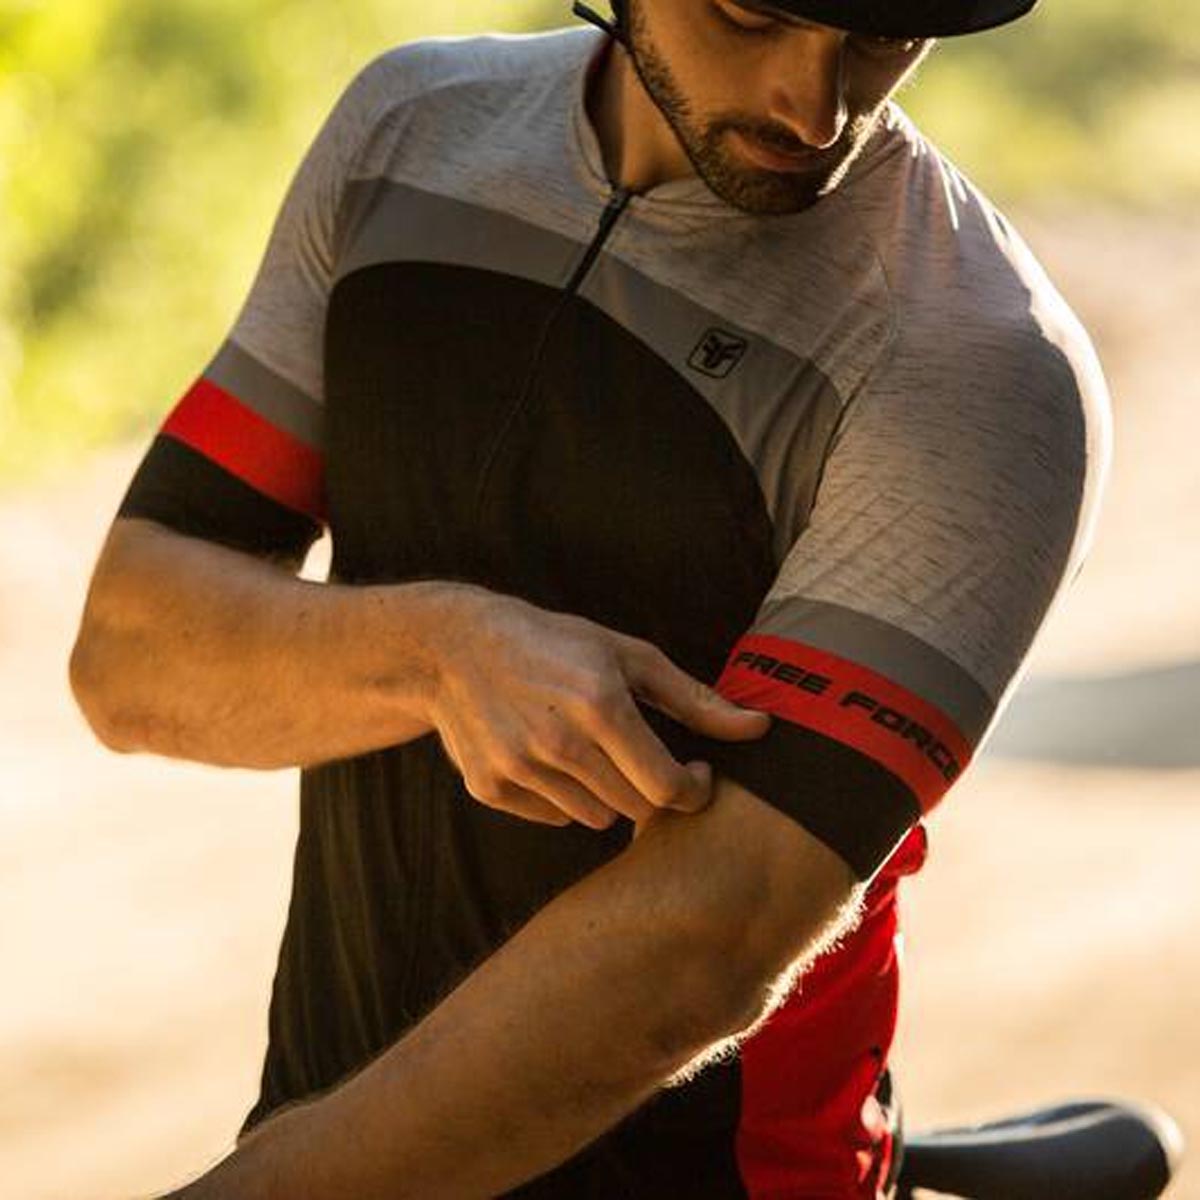 Camisa Freeforce Masculina Sport Crafty Preta e Cinza e Vermelha Ciclismo 21